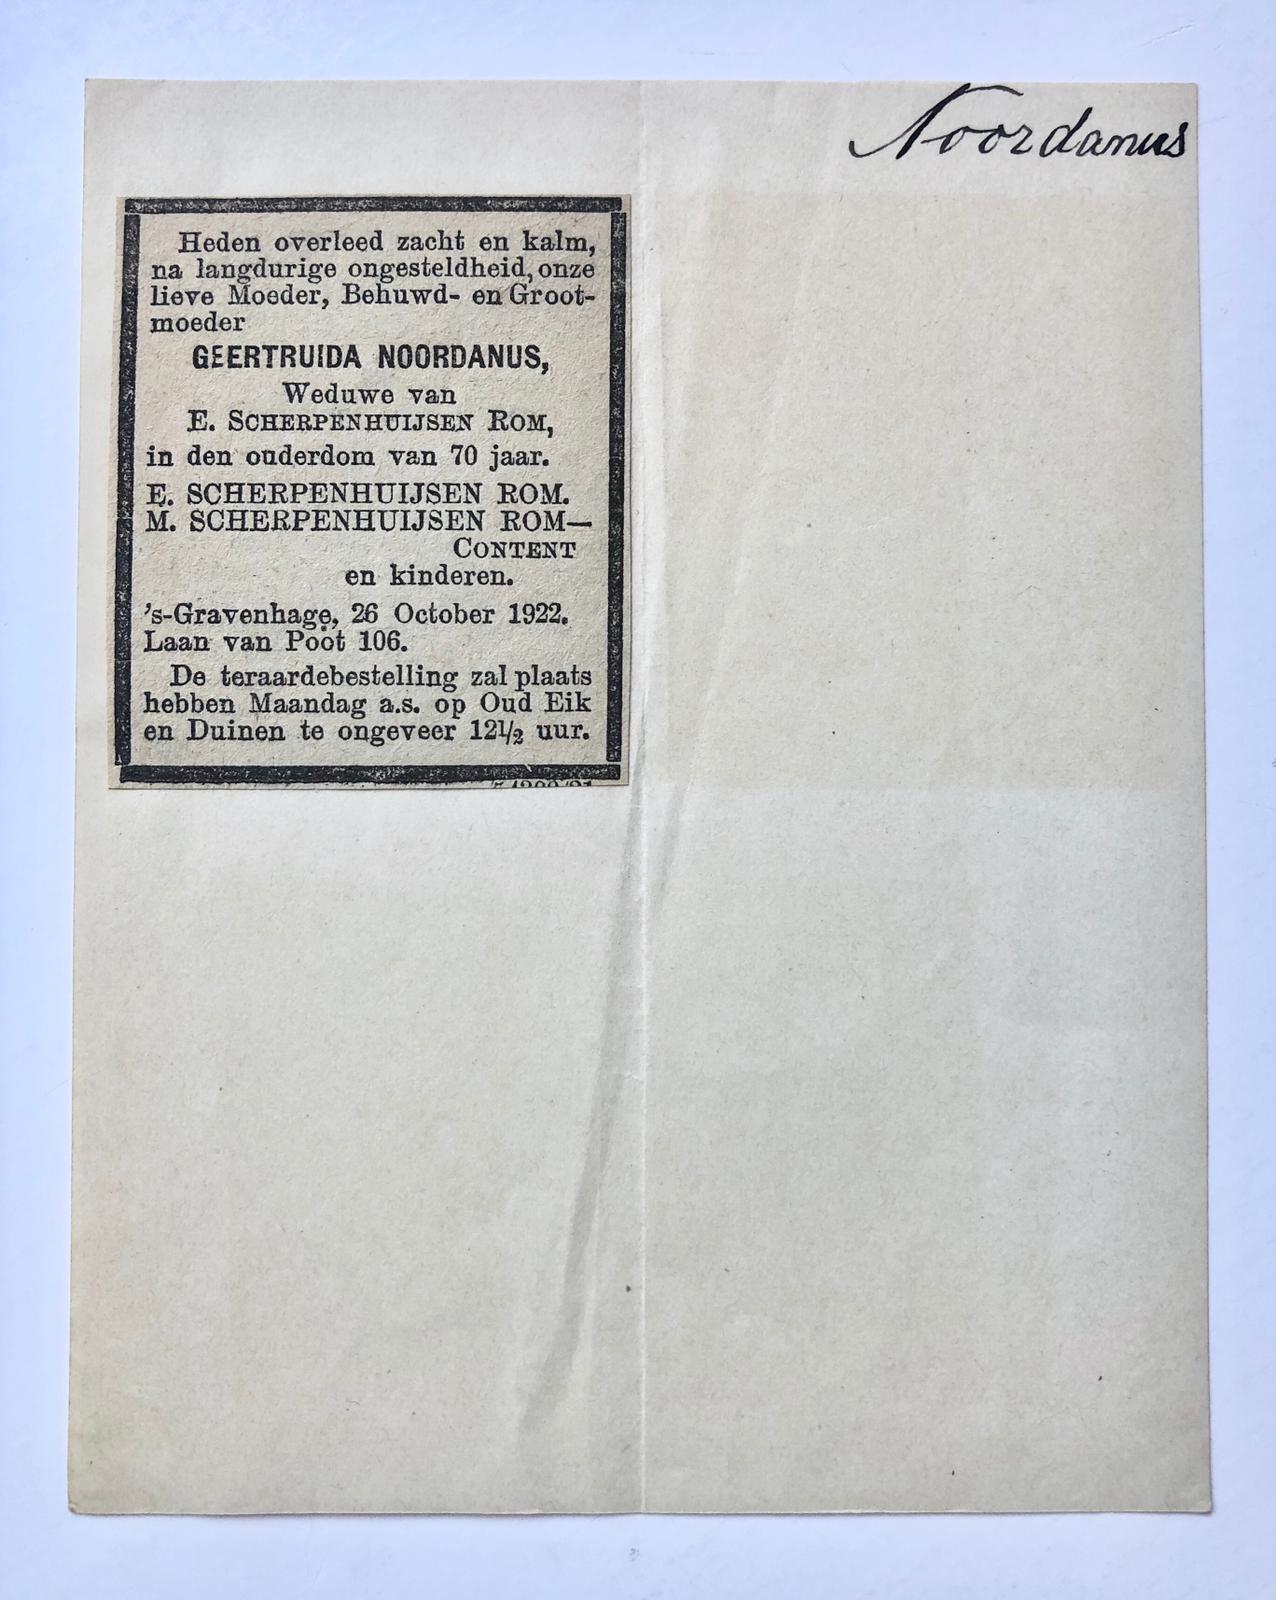 [Family newspaper advertisement 1962] Twee familieadvertenties Noordanus, 1922-1962.